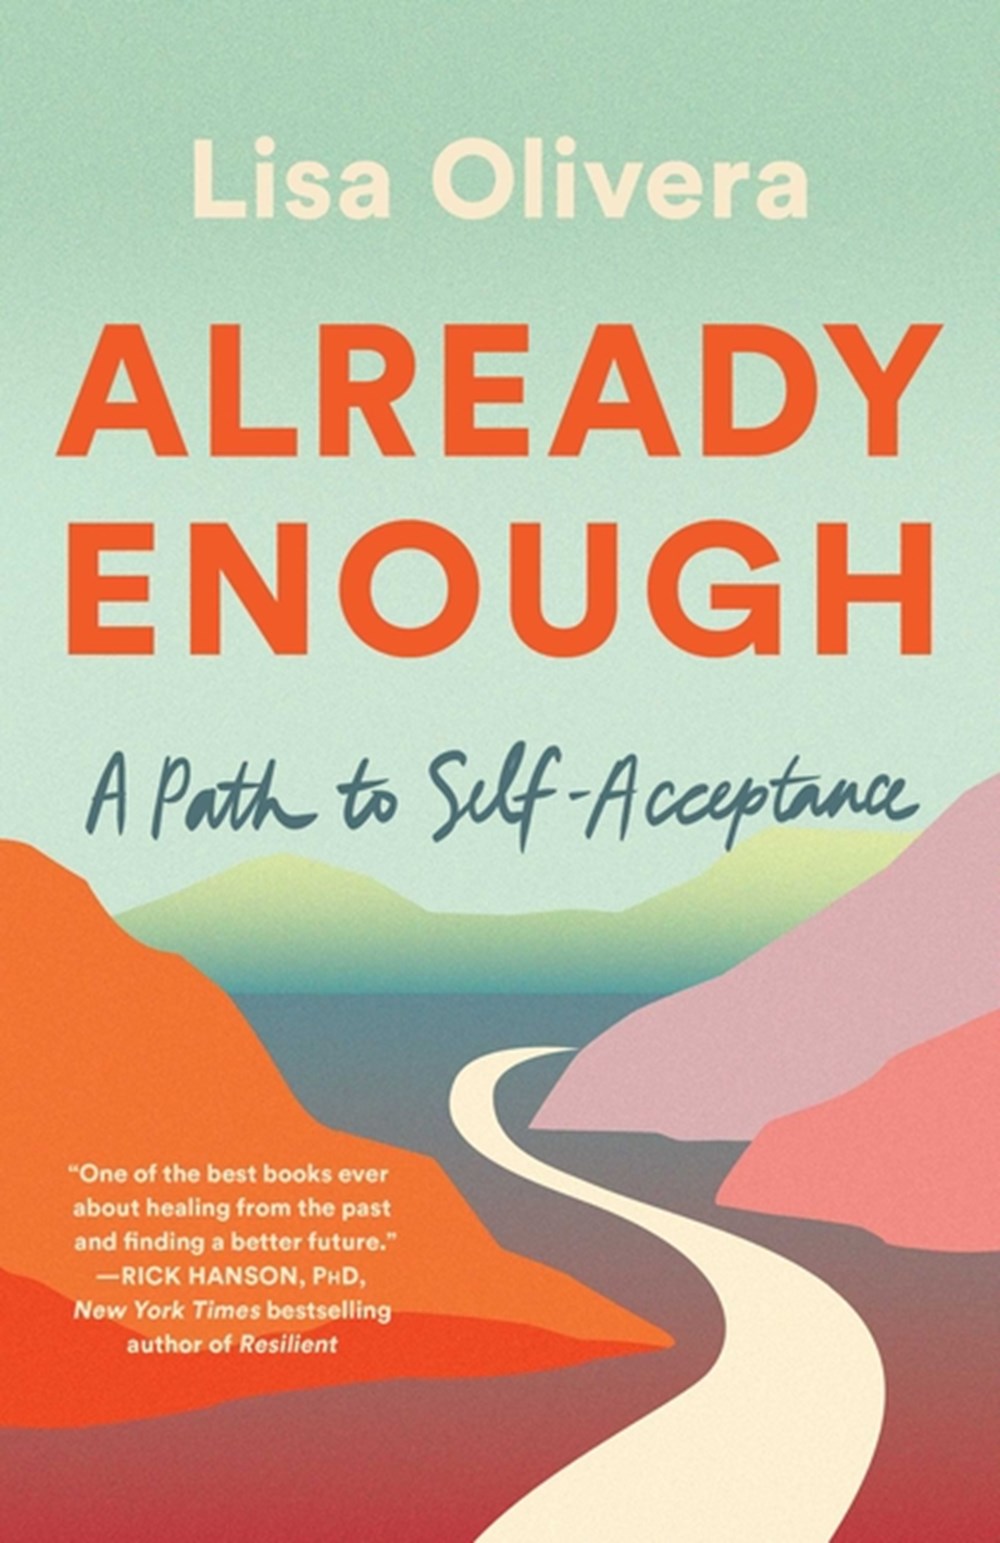 Already Enough A Path to Self-Acceptance